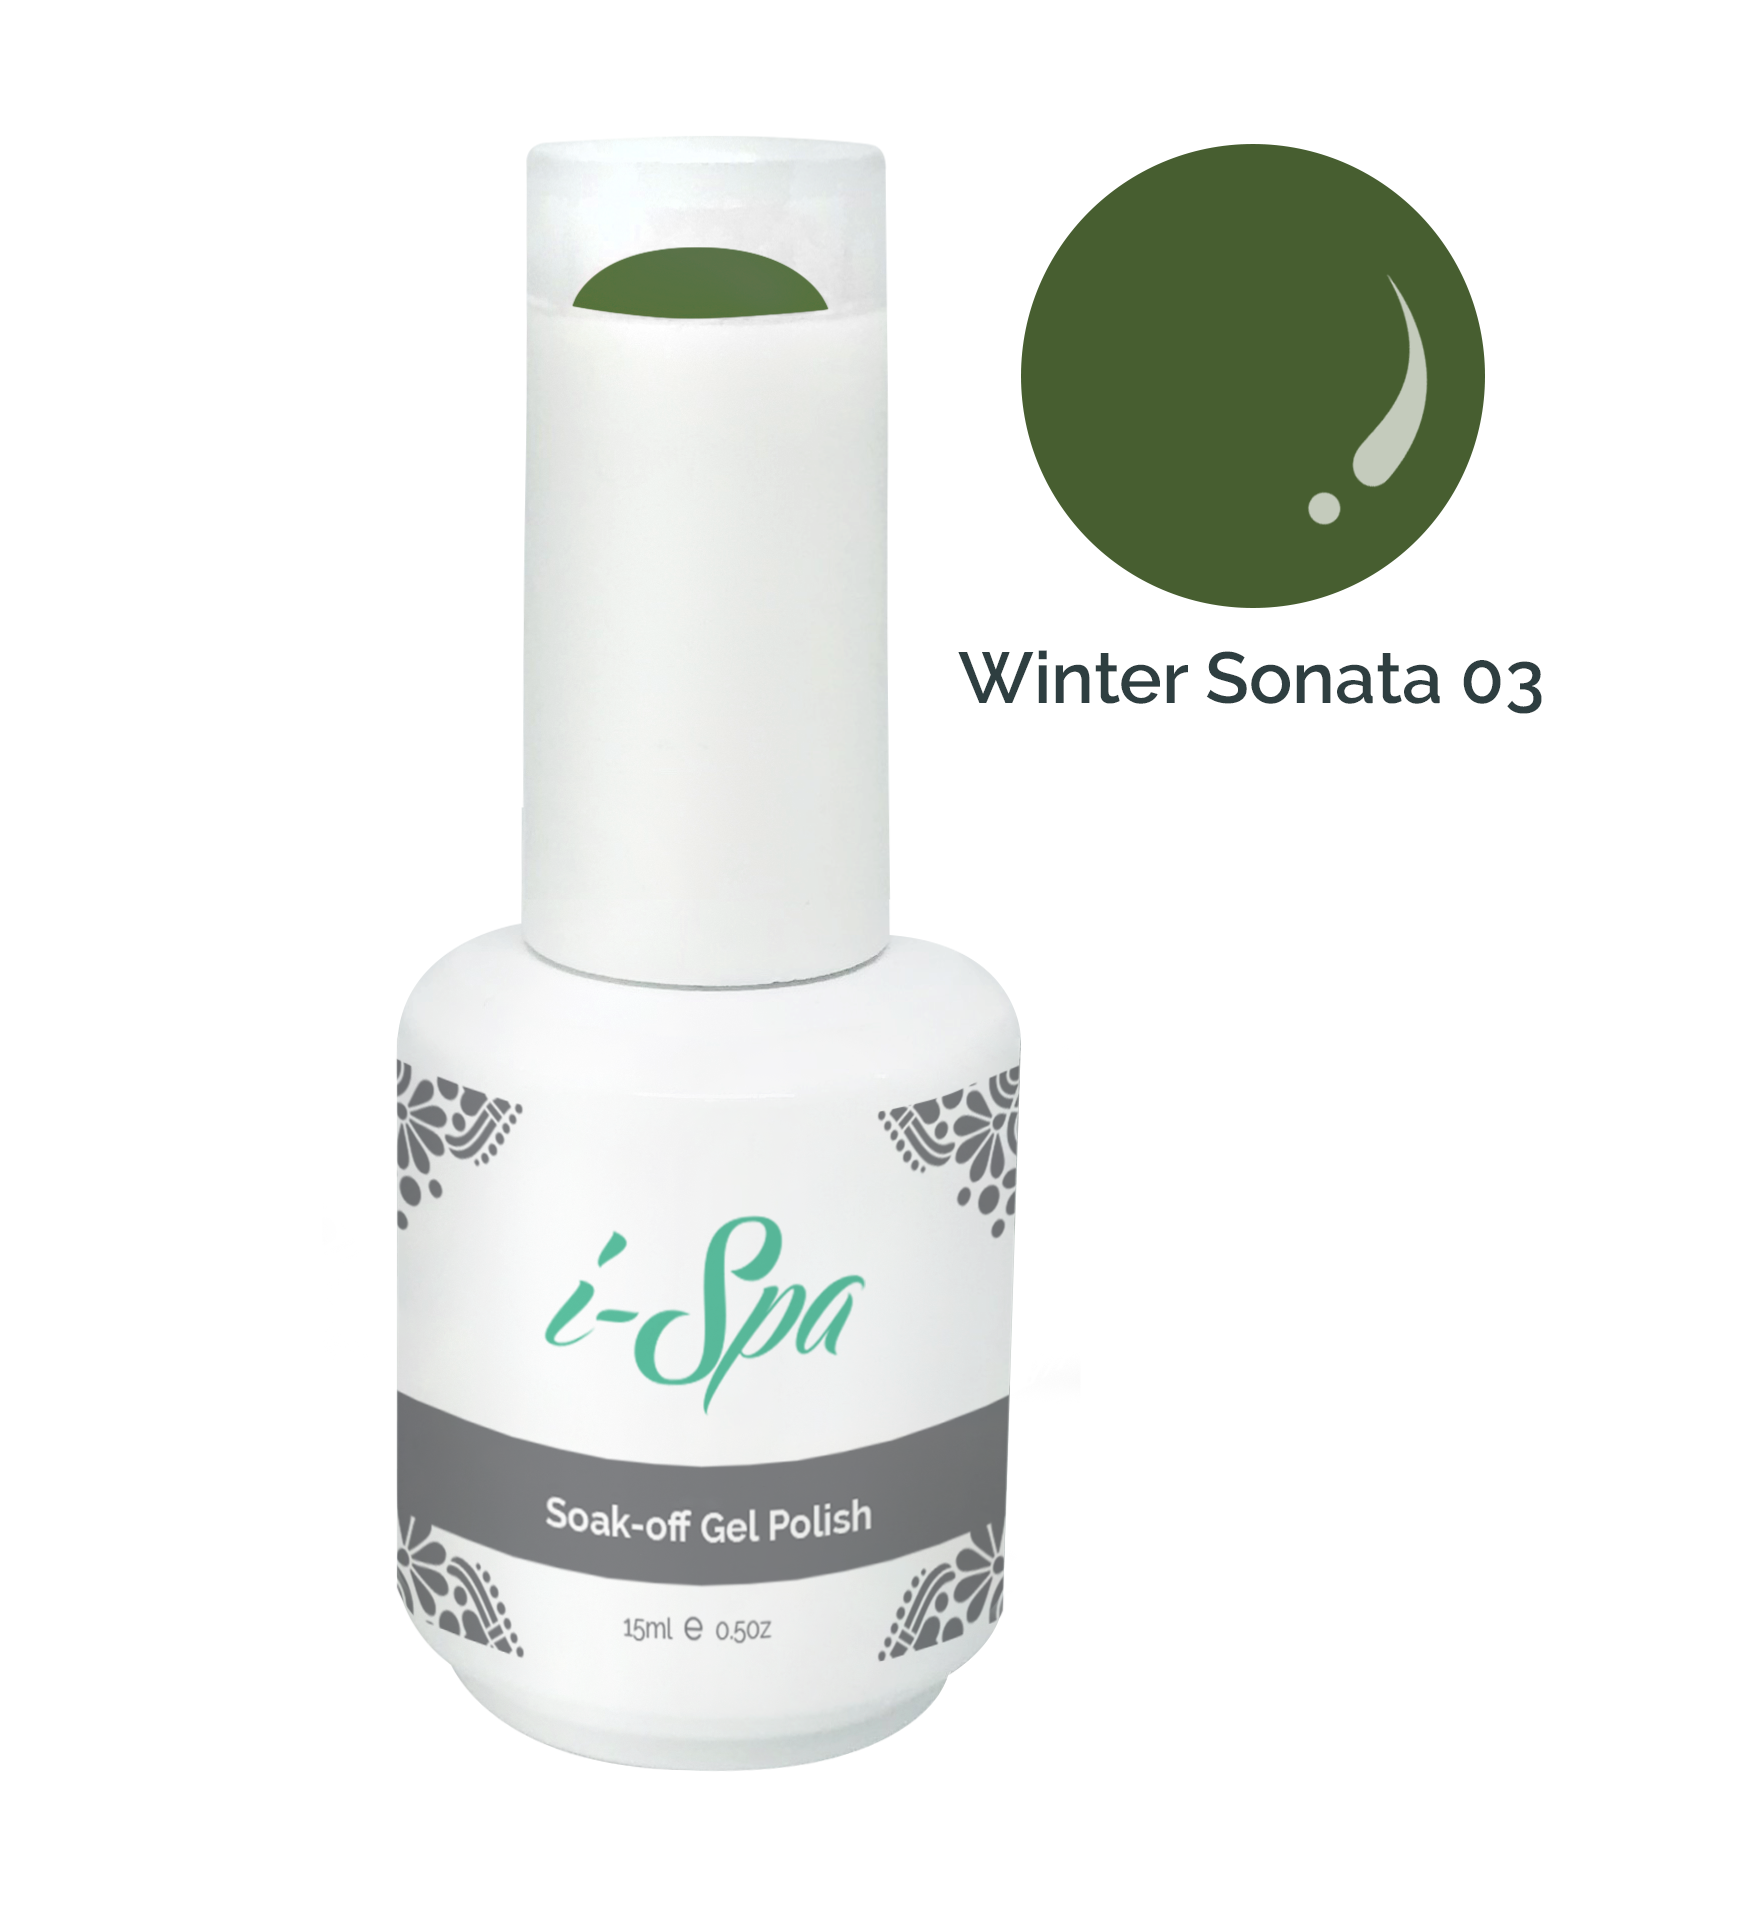 Winter Sonata 03